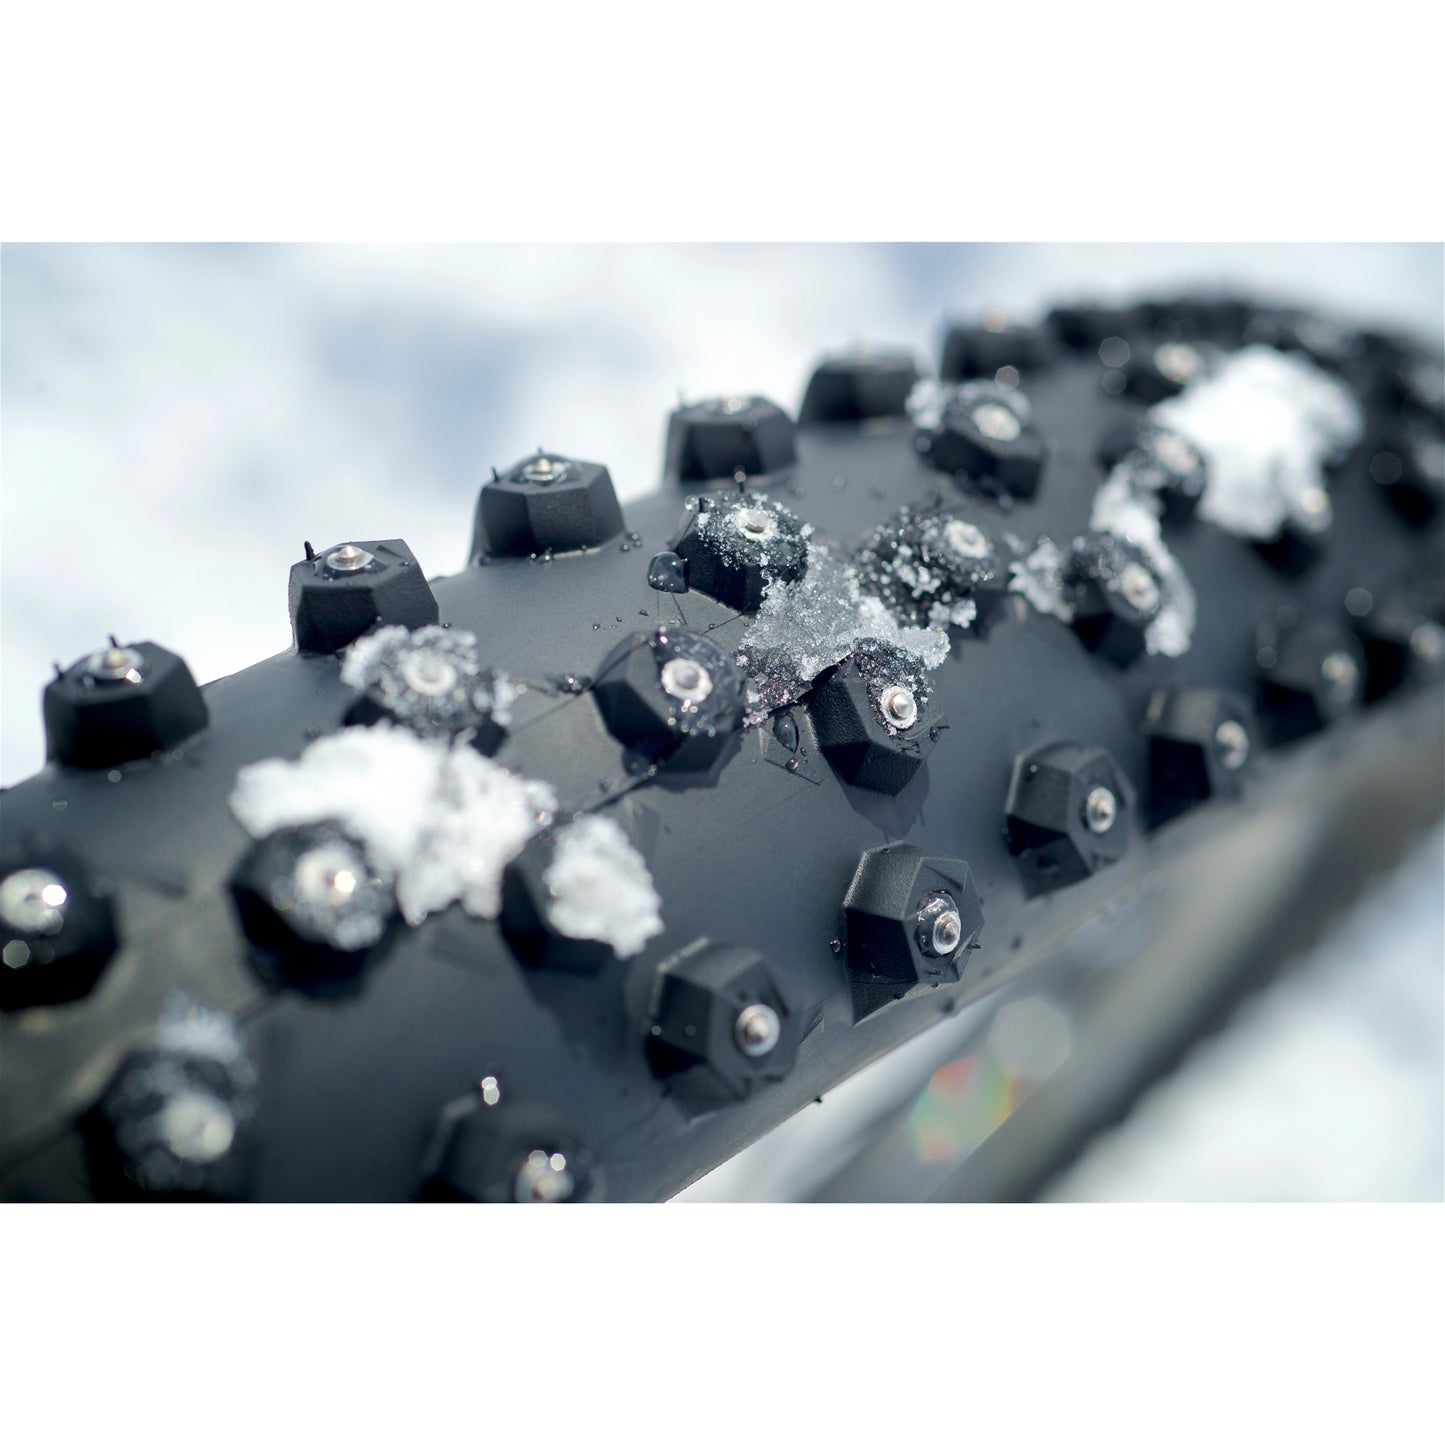 Покрышка Schwalbe Ice Spiker Pro с проволочным бортом — производительность | Зима | RaceGuard — 29x2,25 дюйма | Черный